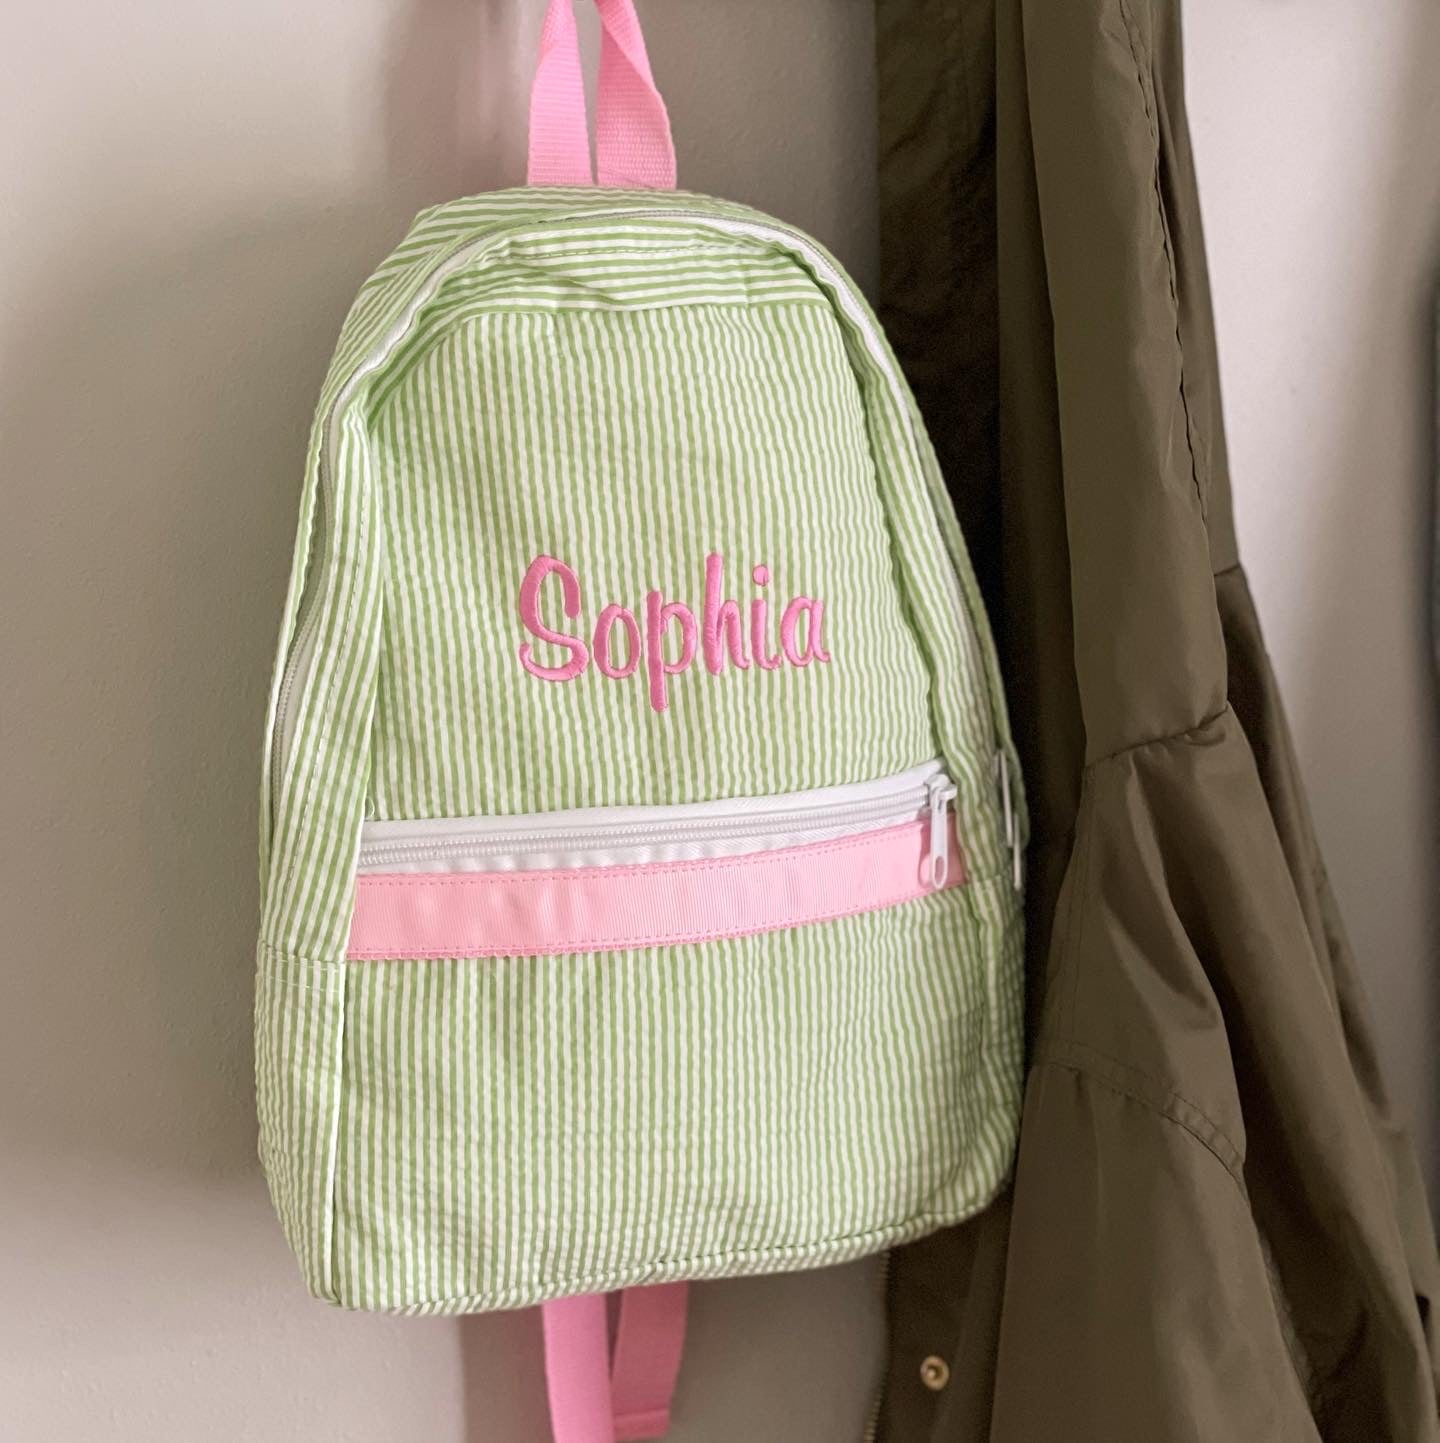 Small Backpack {Pink Seersucker}